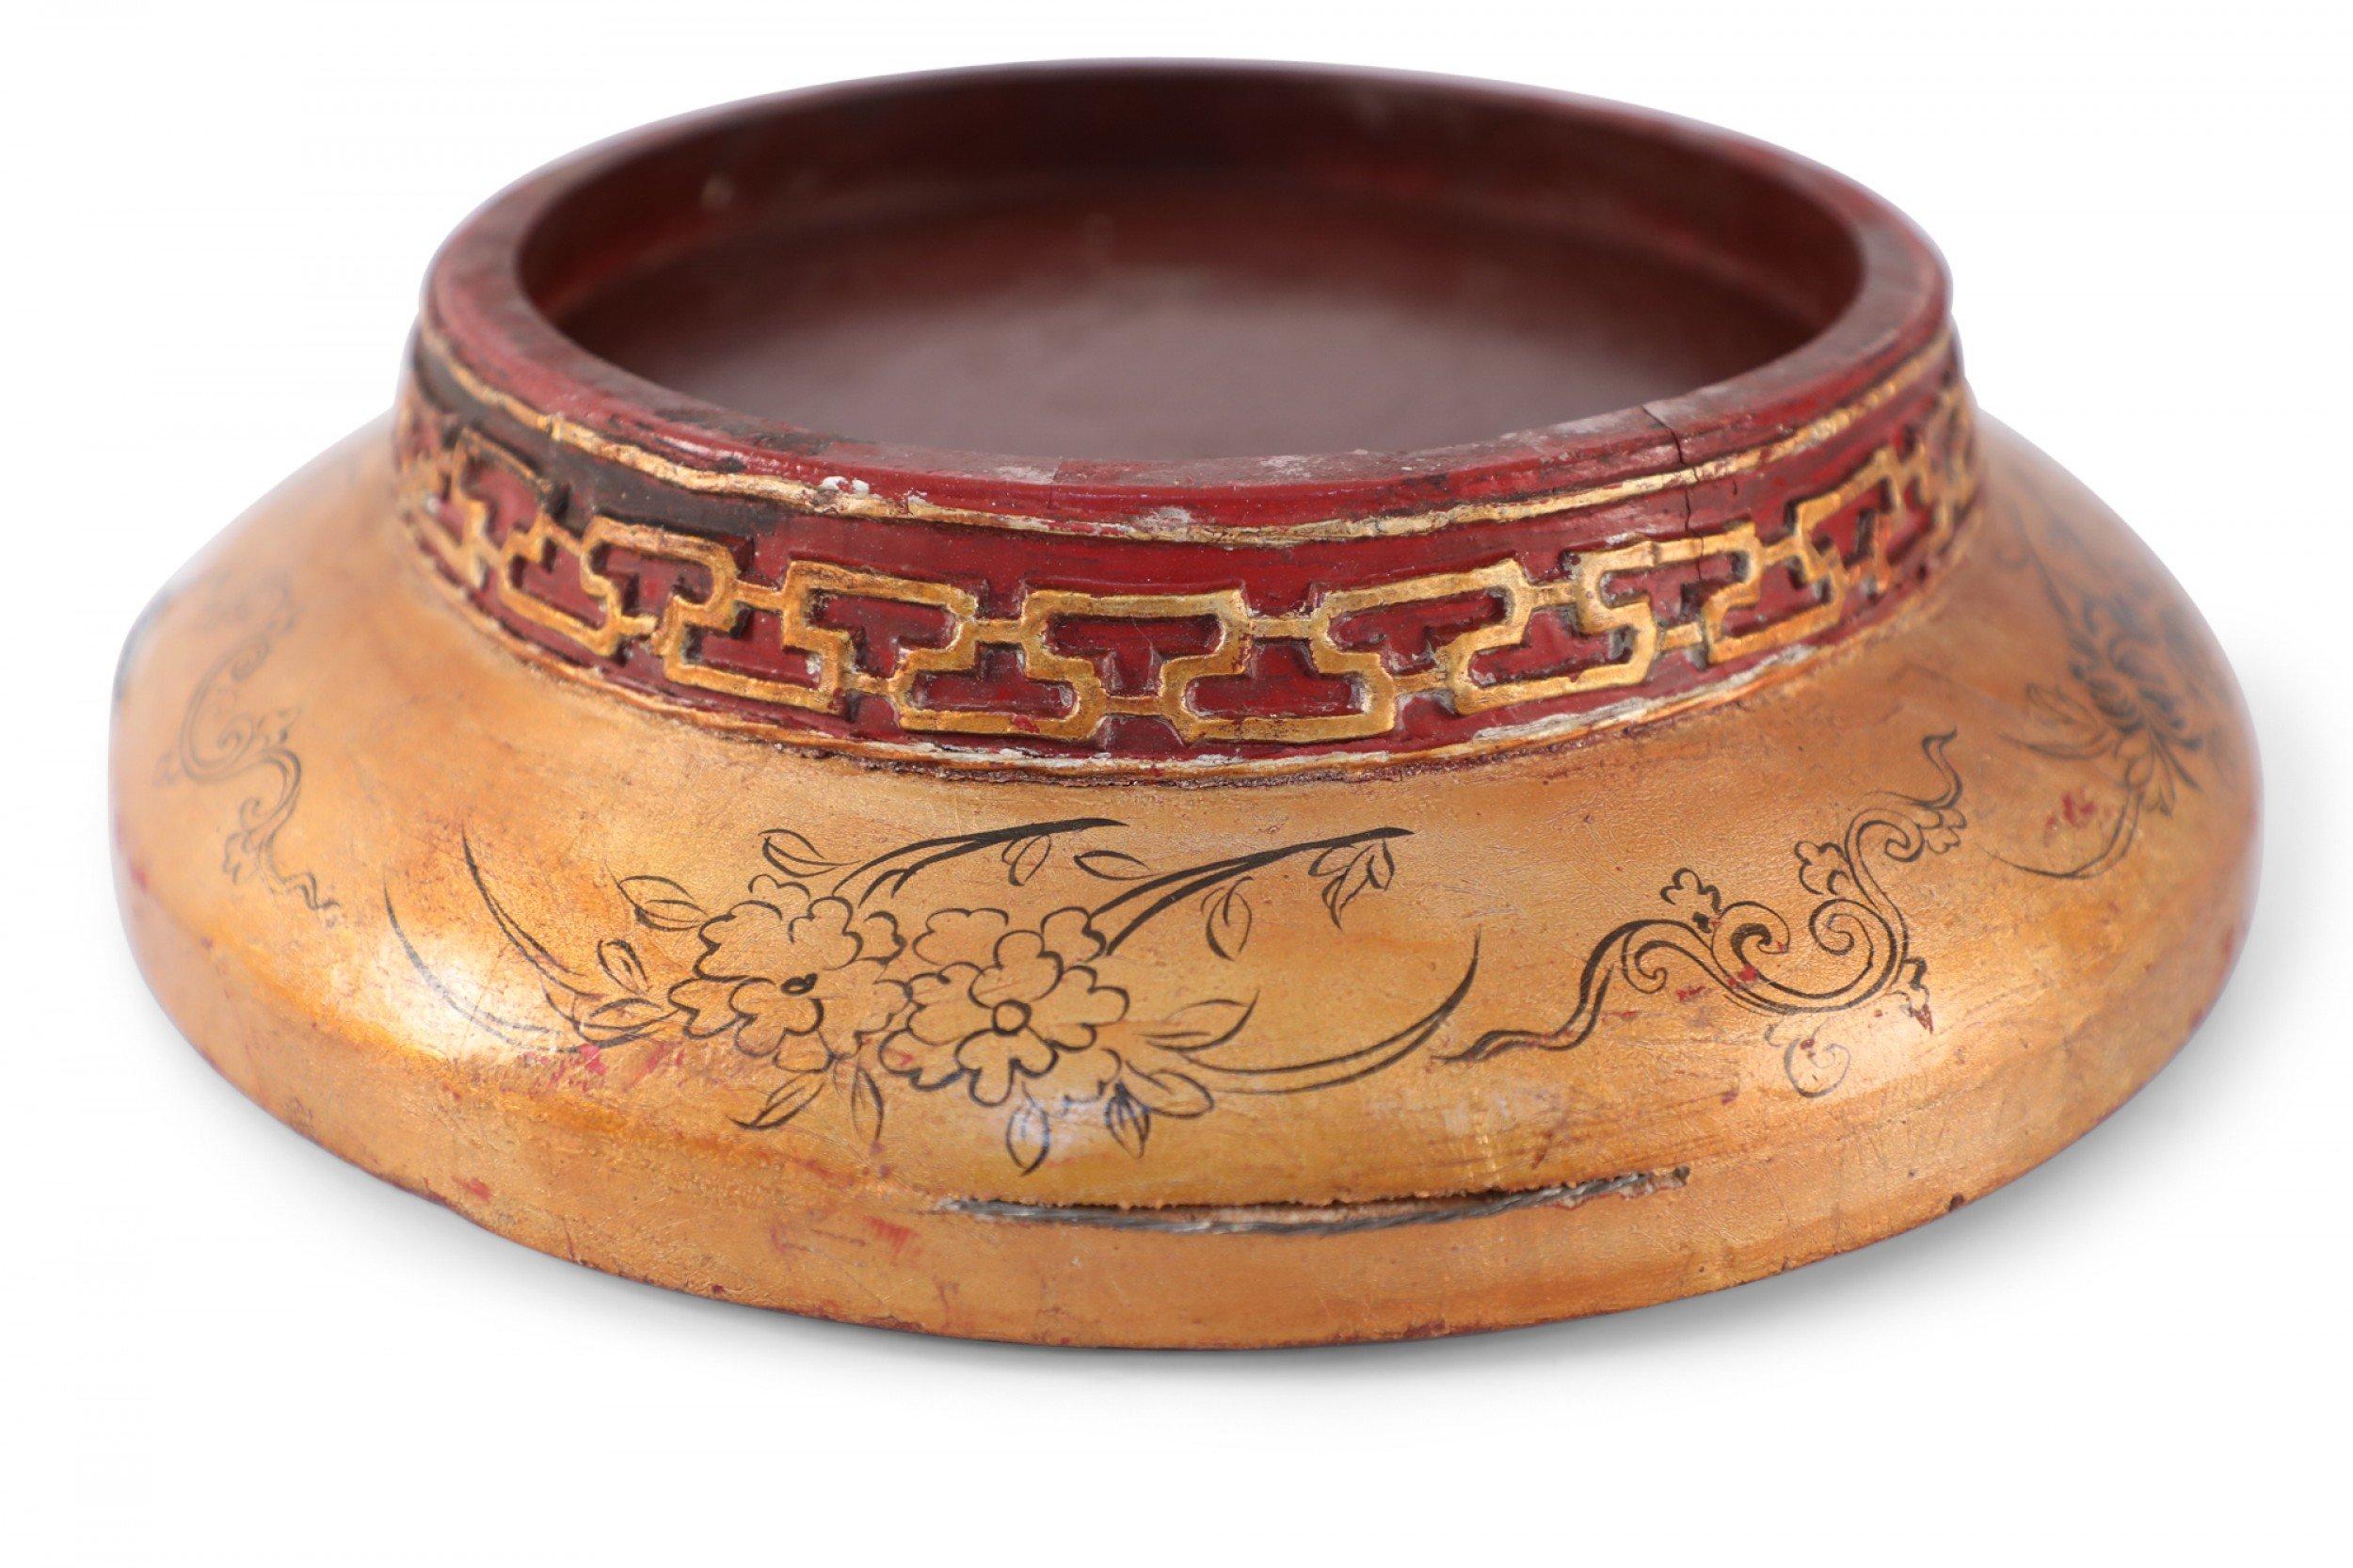 Boîte circulaire chinoise ancienne en bois avec un motif de caractère sculpté sur le dessus et un pied géométrique sculpté, peint en or et rouge avec un couvercle ajusté et un motif de bordure finement peint en noir.
   